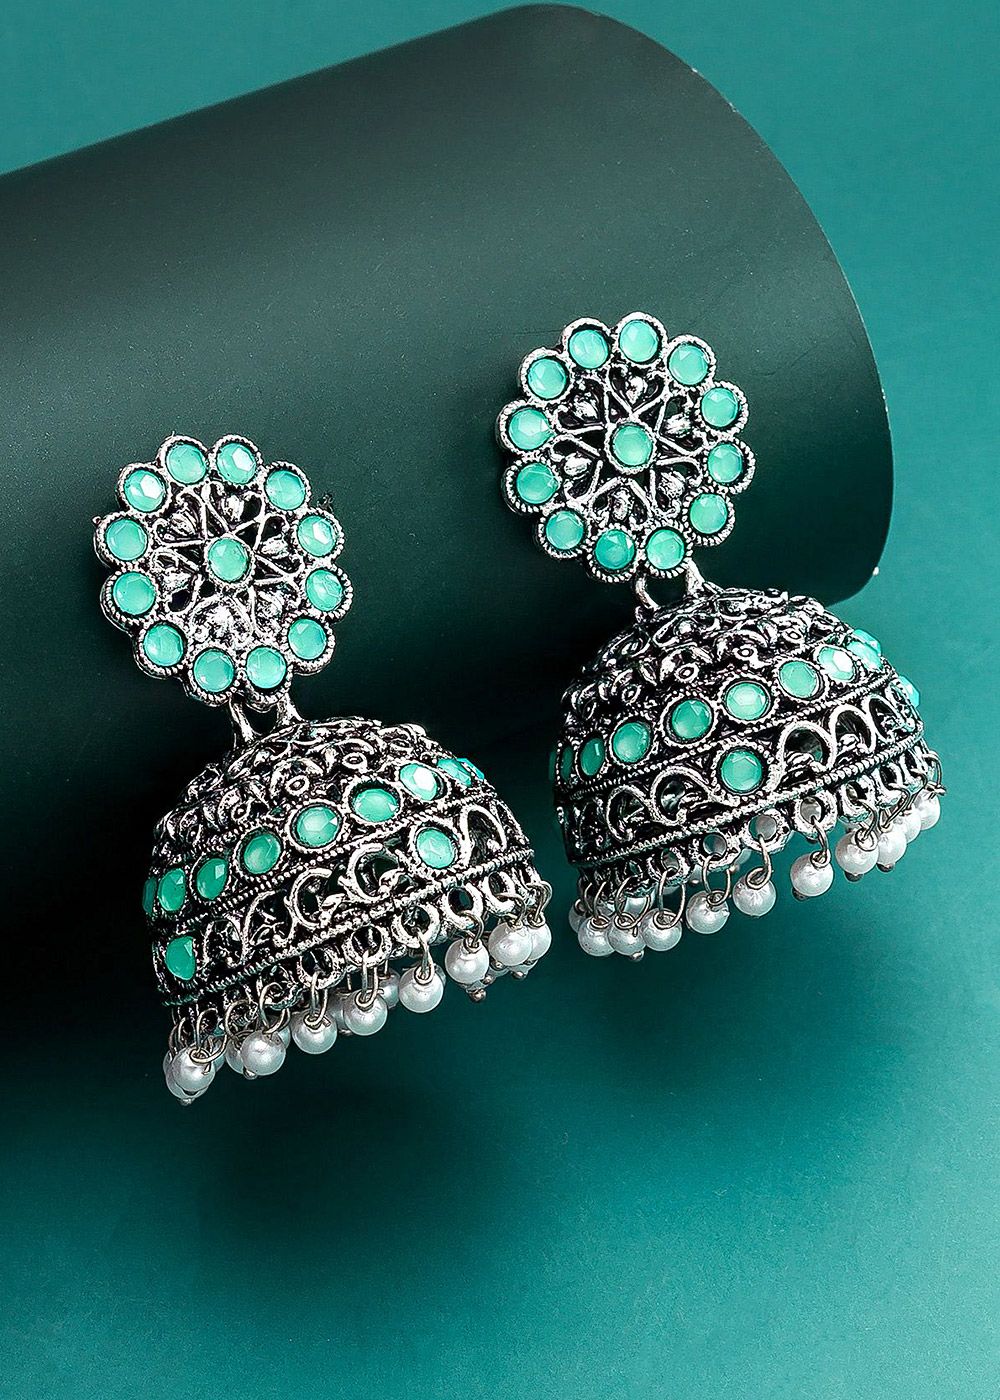 Share more than 75 jhumka earrings for lehenga latest - POPPY